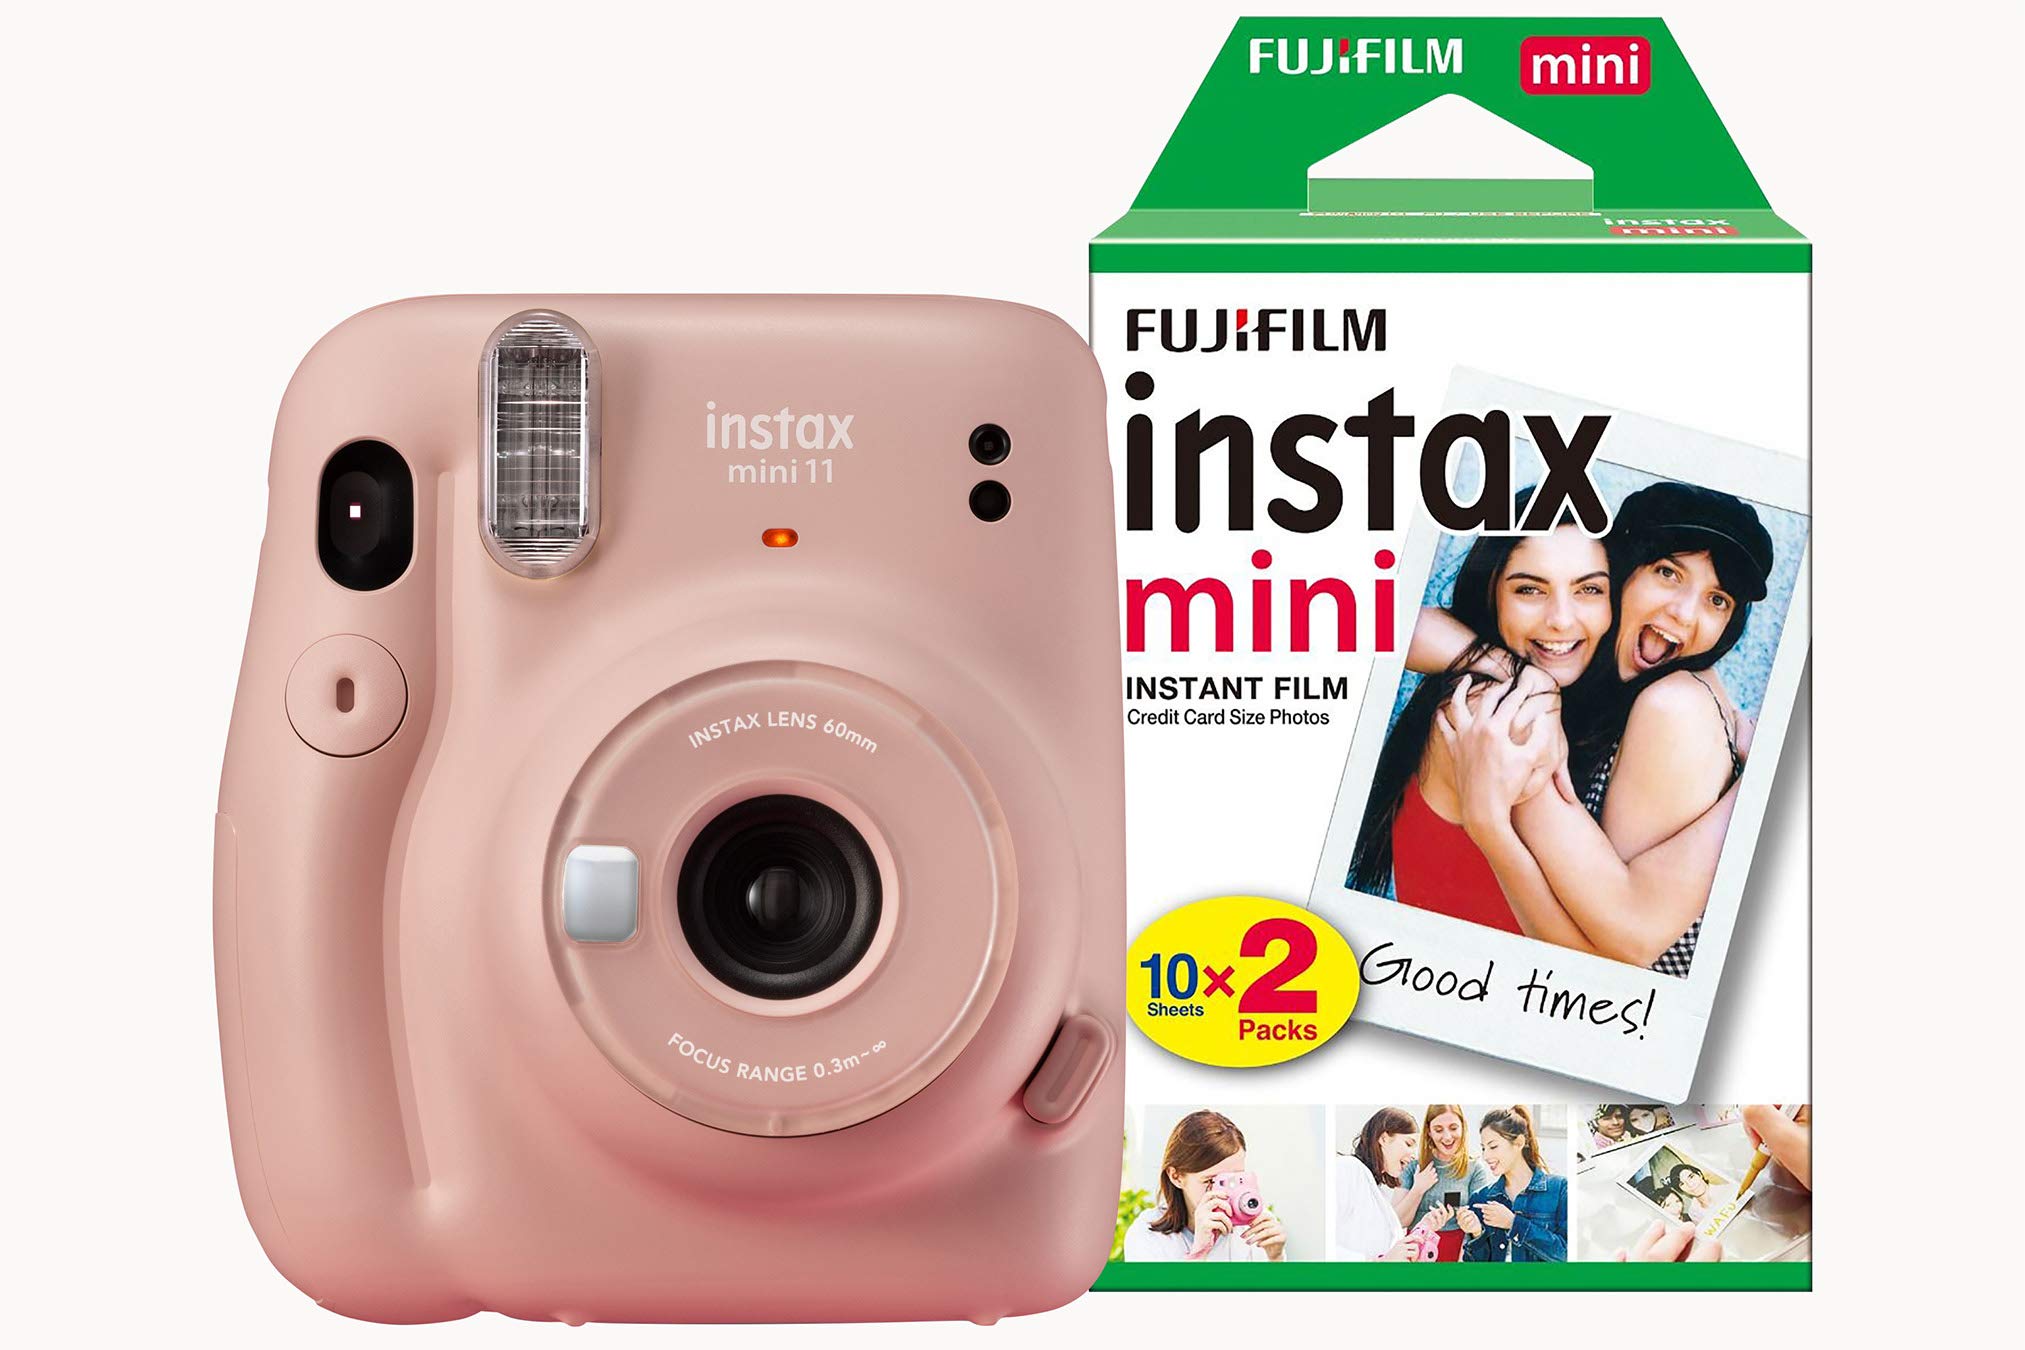 Máy ảnh Fujifilm Instax Mini 11 là một sản phẩm vô cùng hàng đầu trong lĩnh vực chụp ảnh, tạo nên những bức ảnh đẹp và ấn tượng. Hãy khám phá ngay những hình ảnh đầy màu sắc để cảm nhận sự tuyệt vời của sản phẩm này.